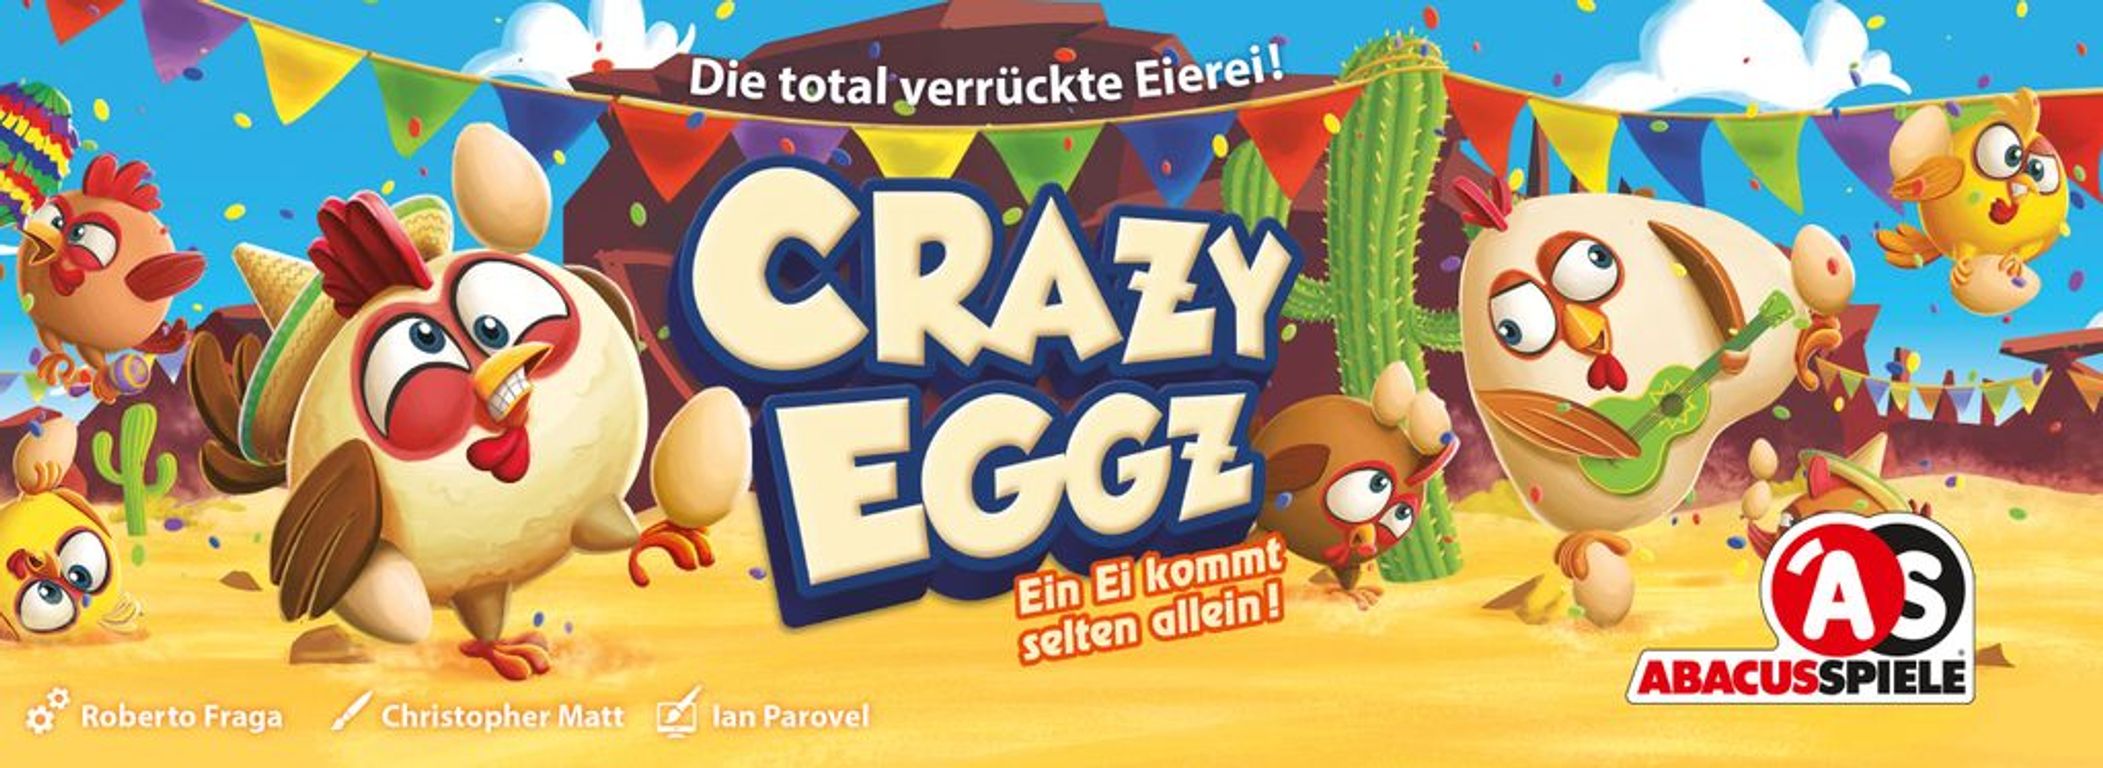 Crazy Eggz box